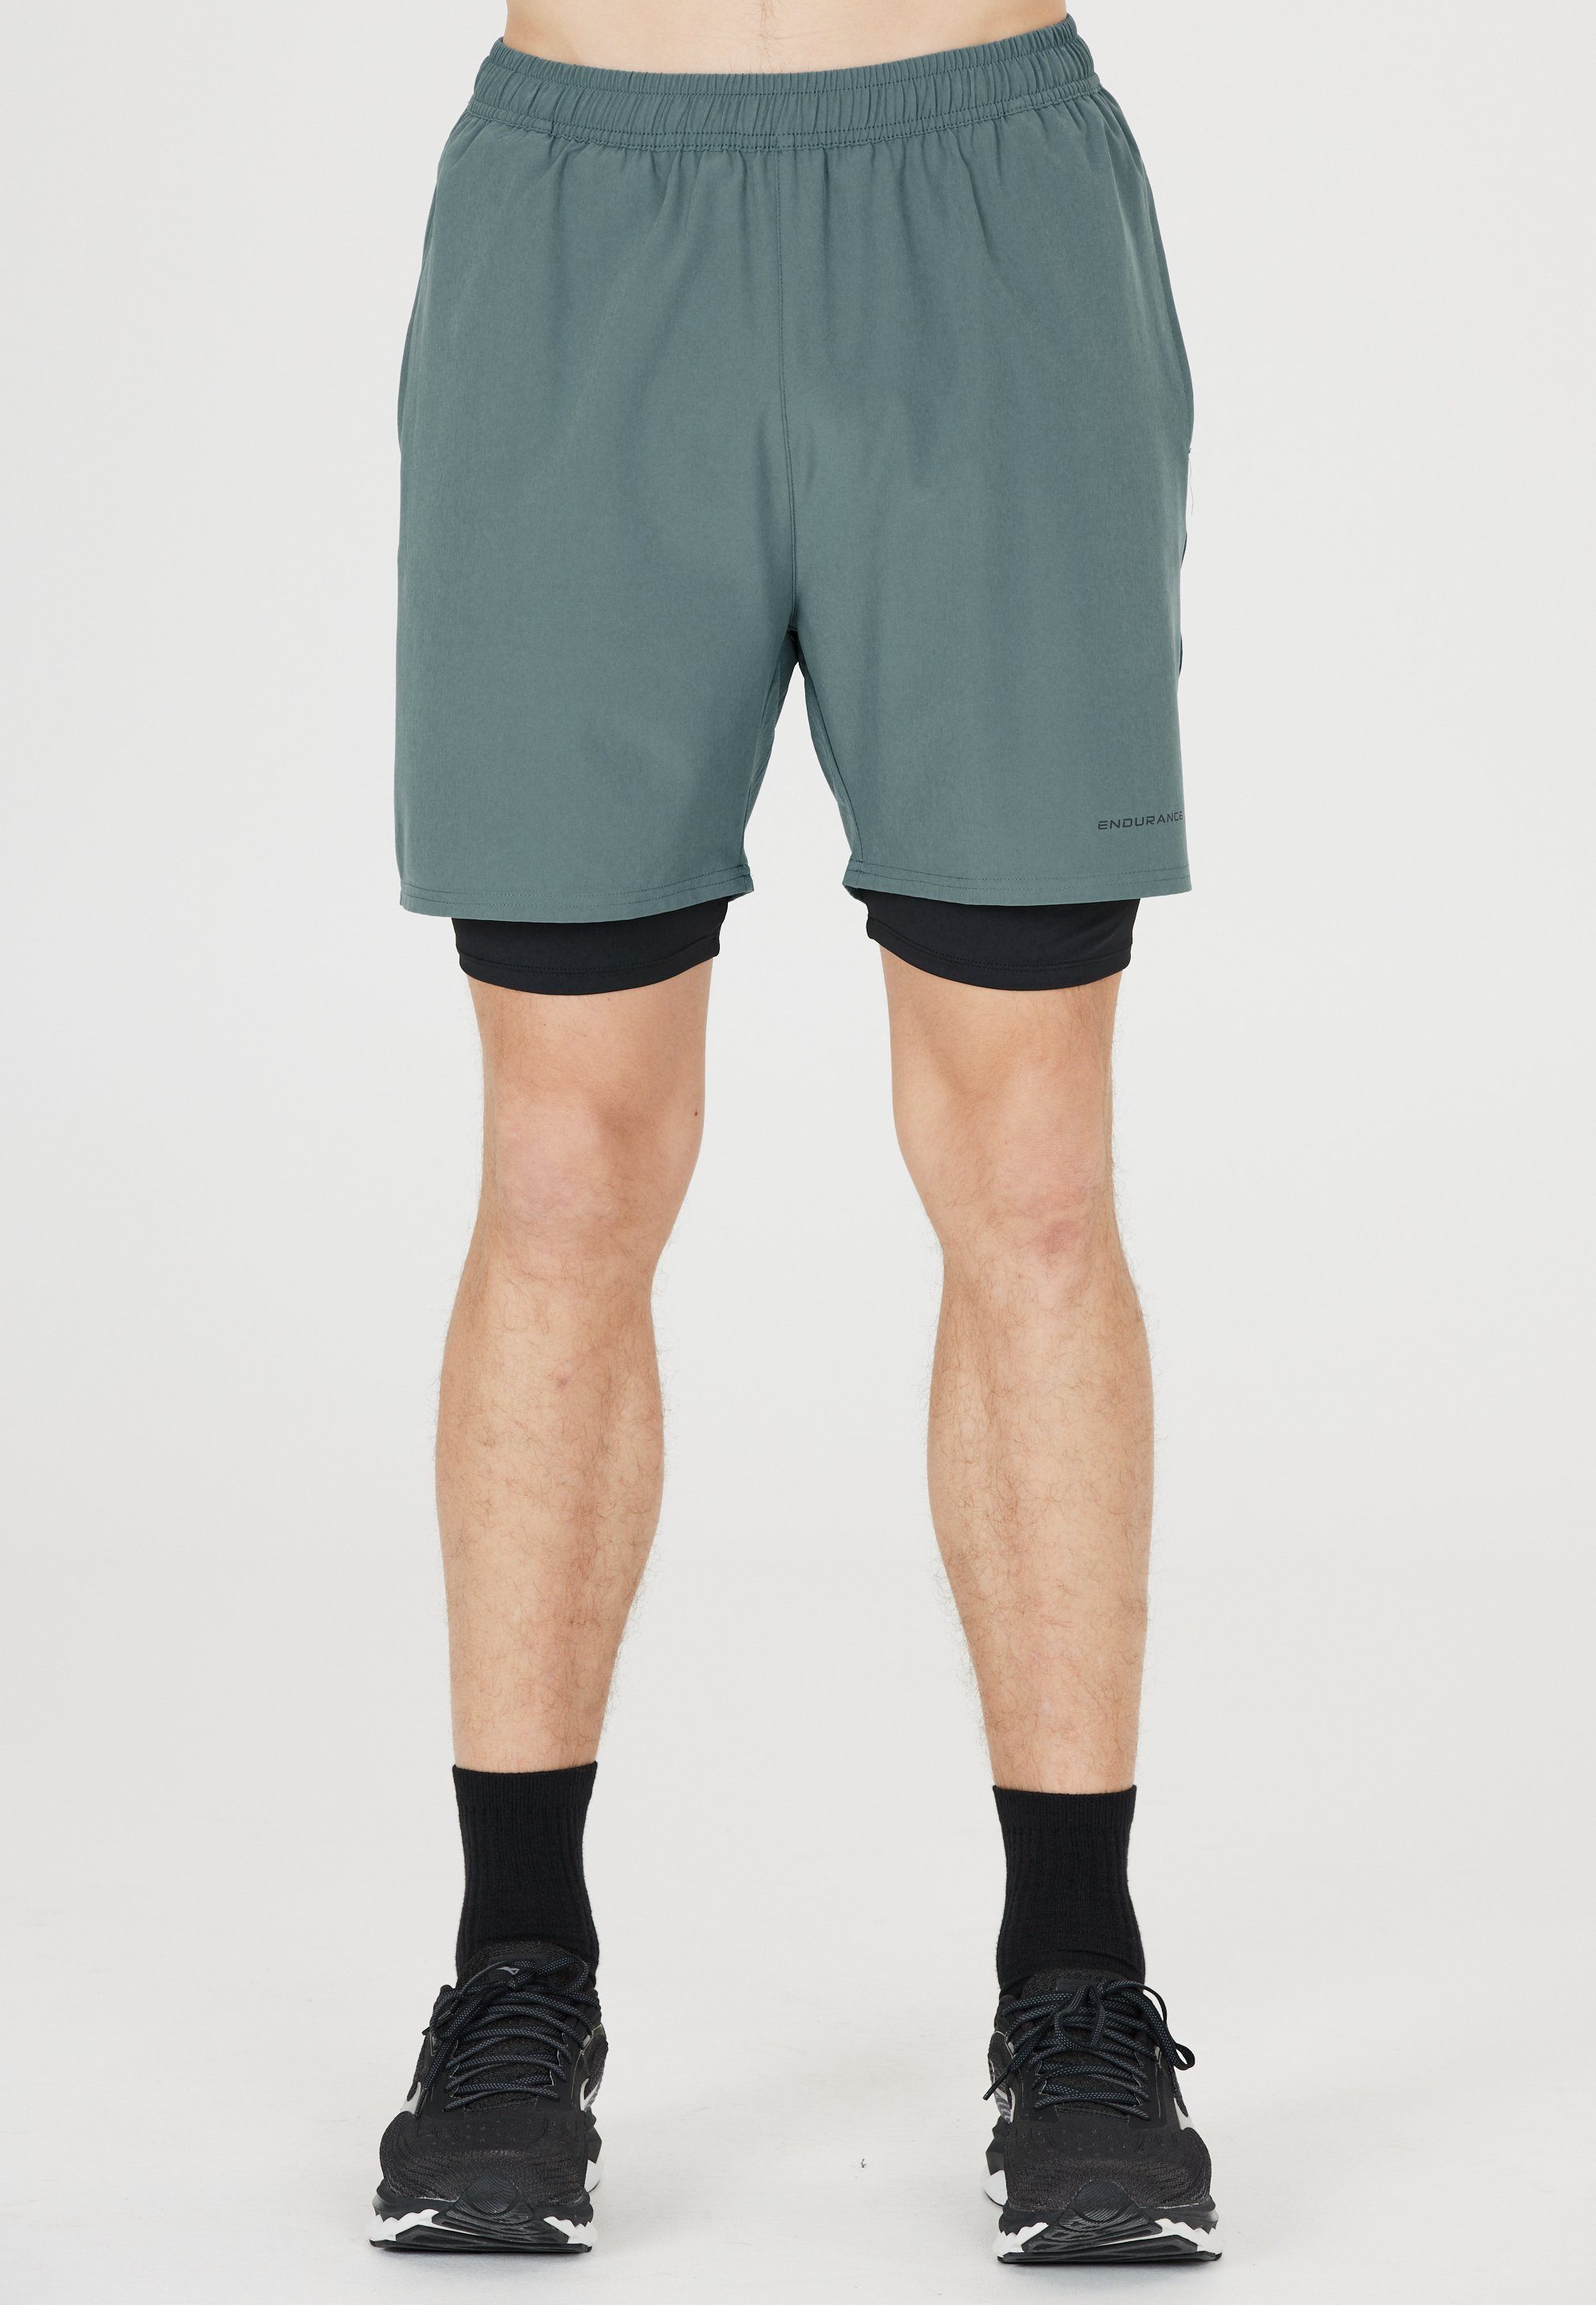 ENDURANCE Shorts Kros Im 2-in-1-Design mit Quick Dry und Stretch-Funktion olivgrün-schwarz